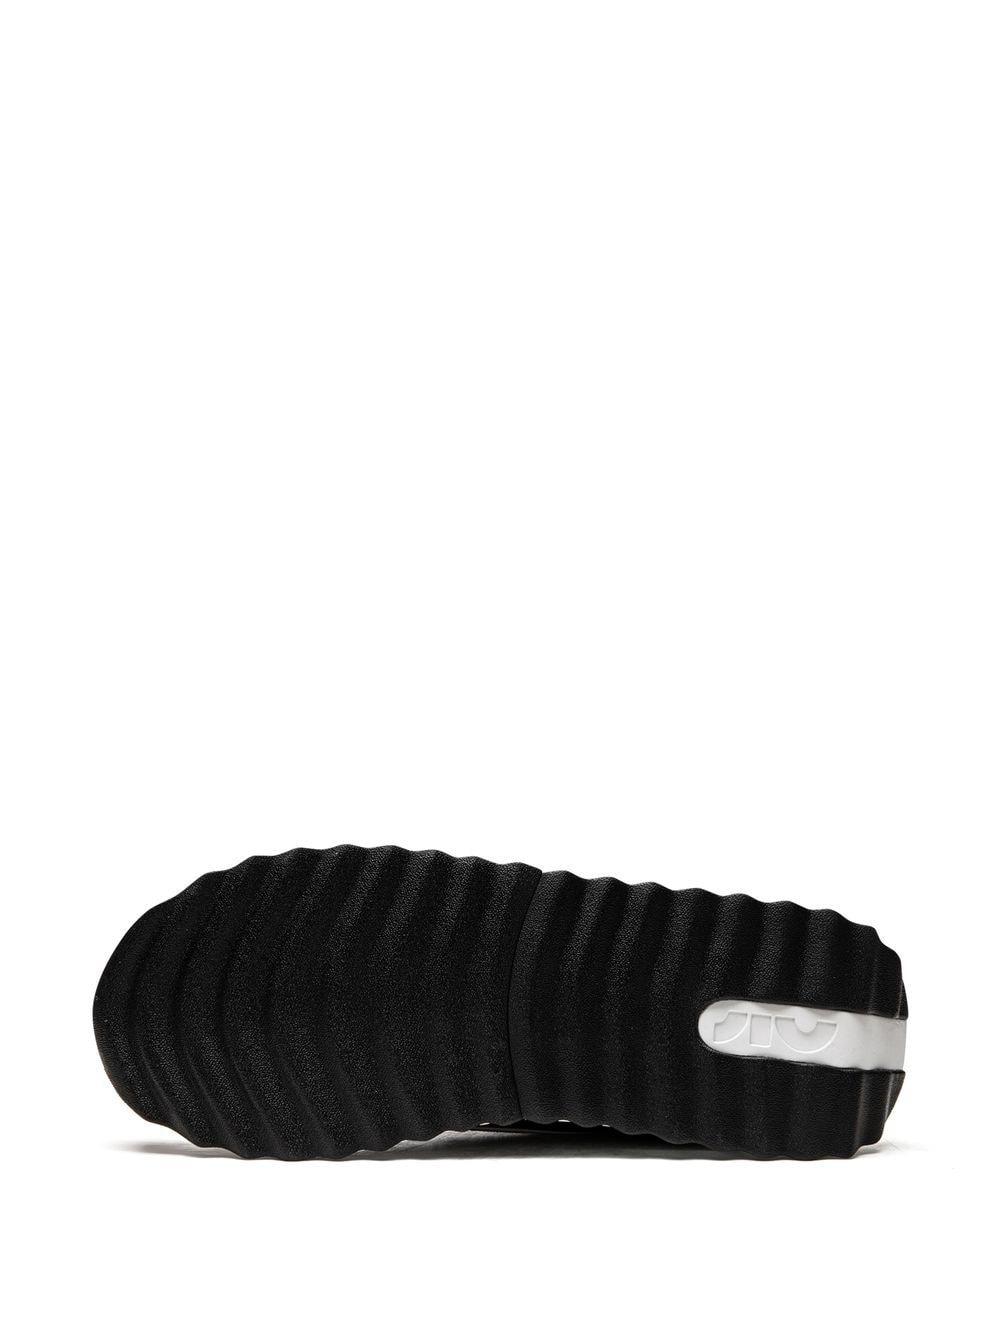 Nike Air Max Dawn Low-top Sneakers in Black for Men | Lyst